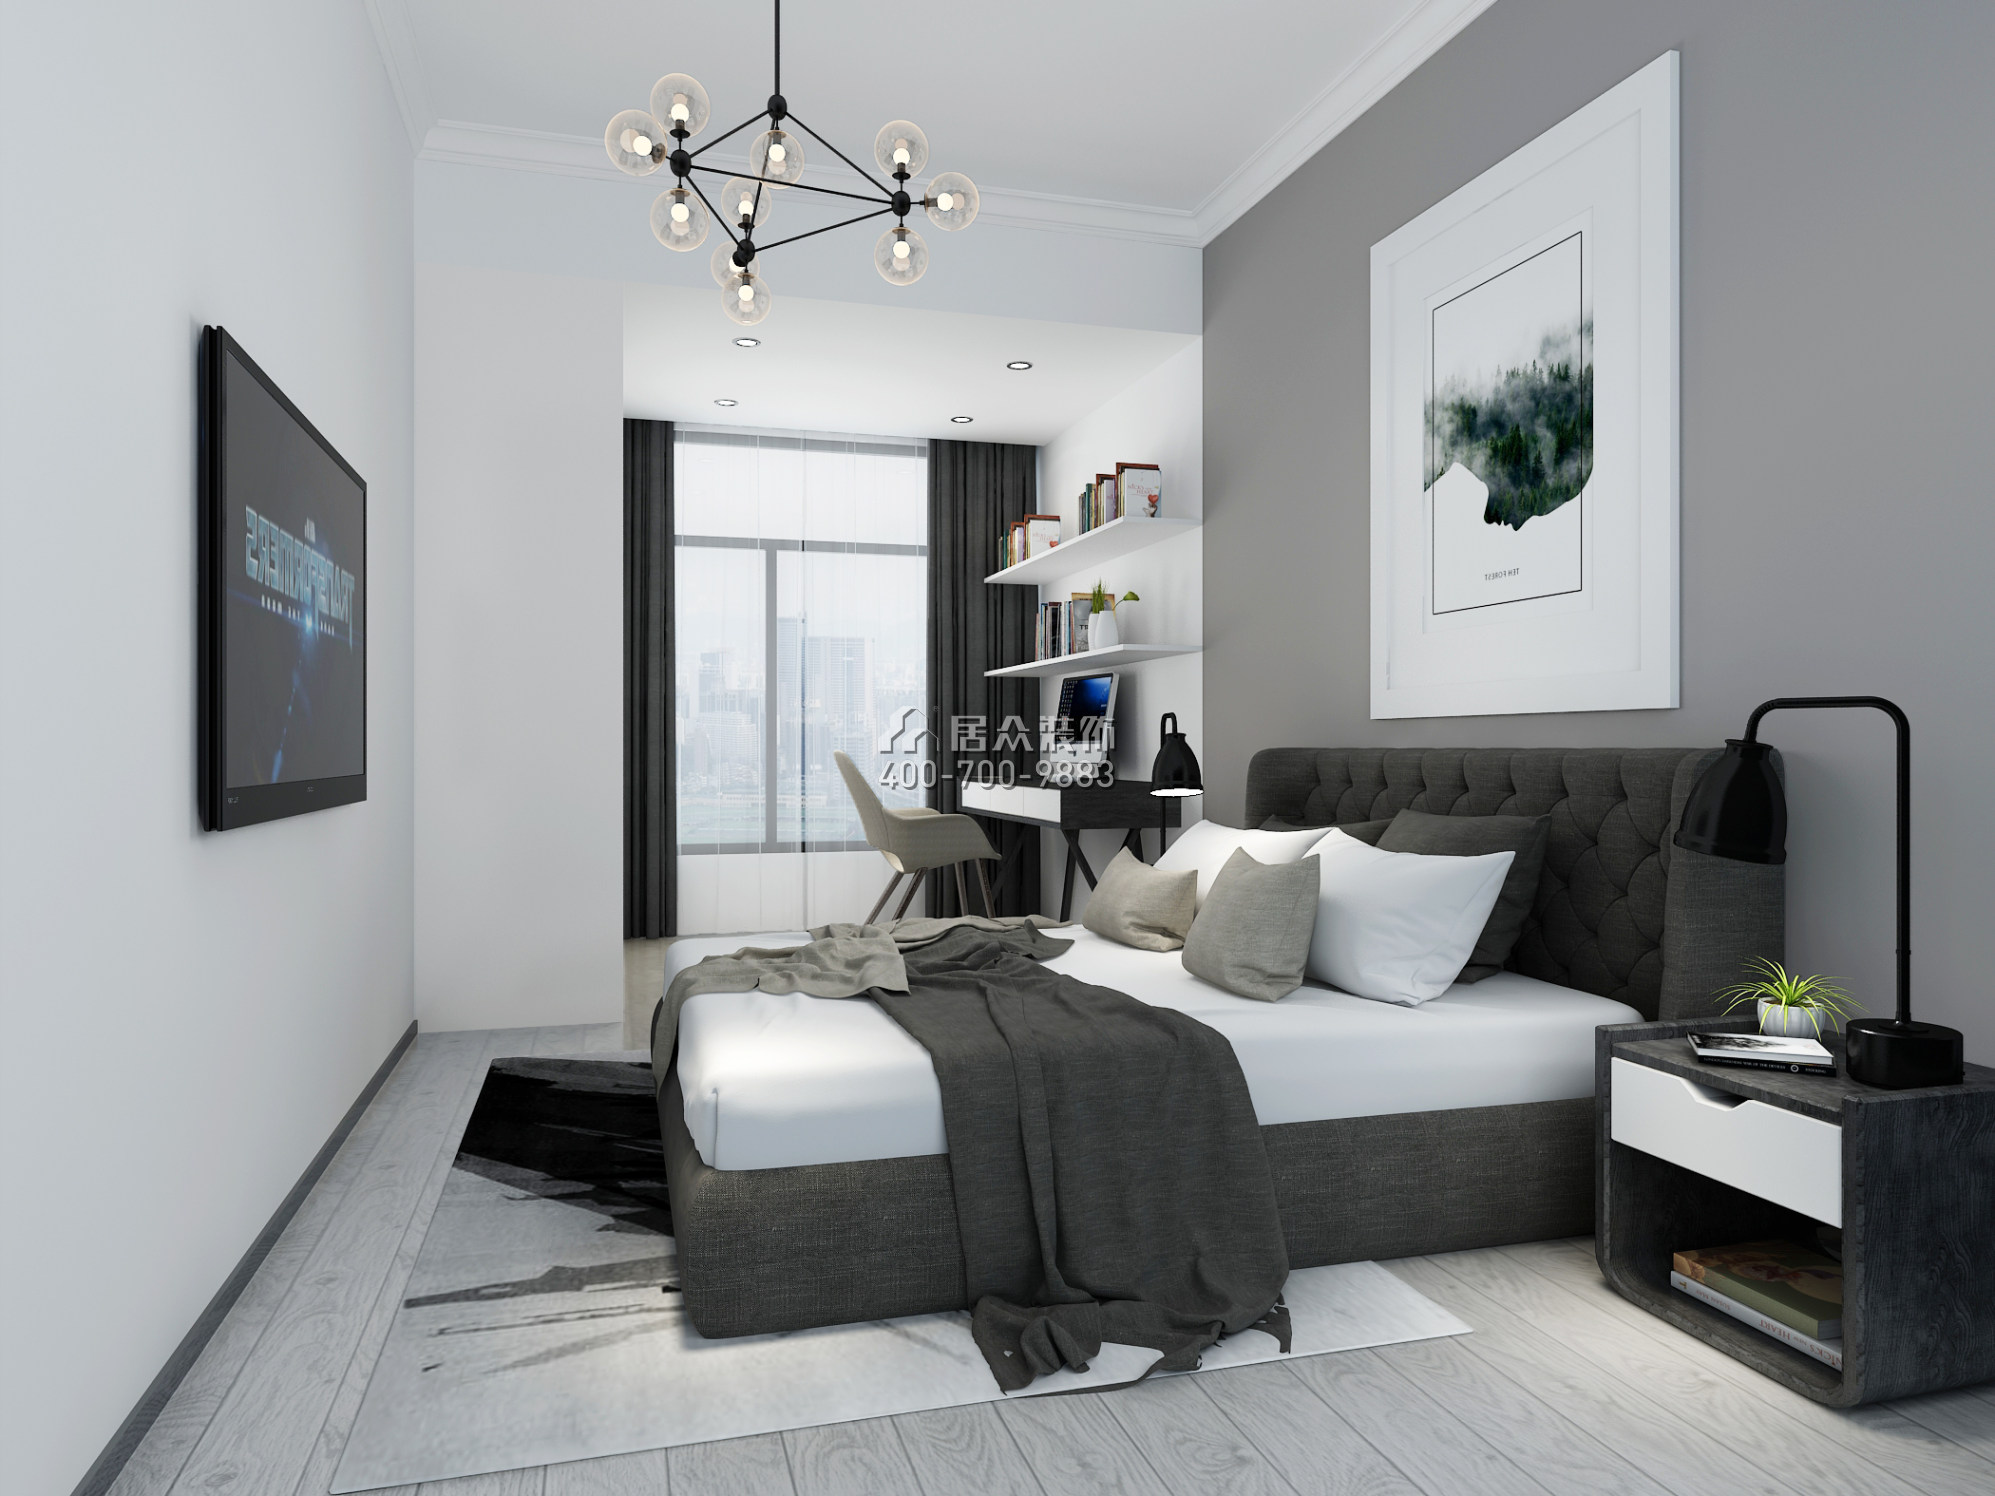 康达尔山海上园一期120平方米现代简约风格平层户型卧室装修效果图